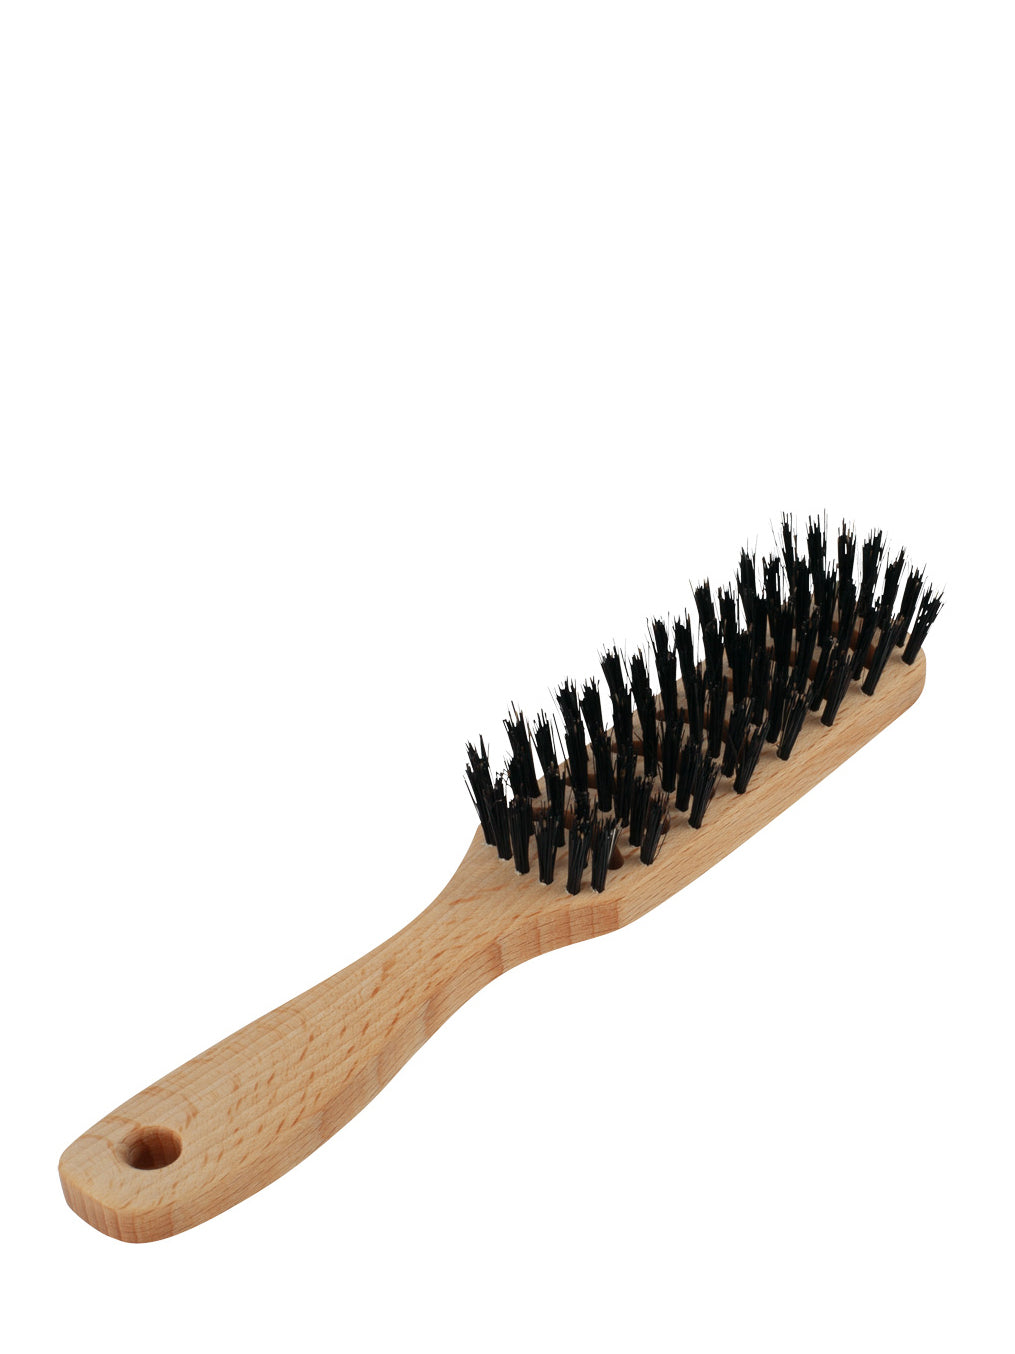 Hairbrush with air circulation slots